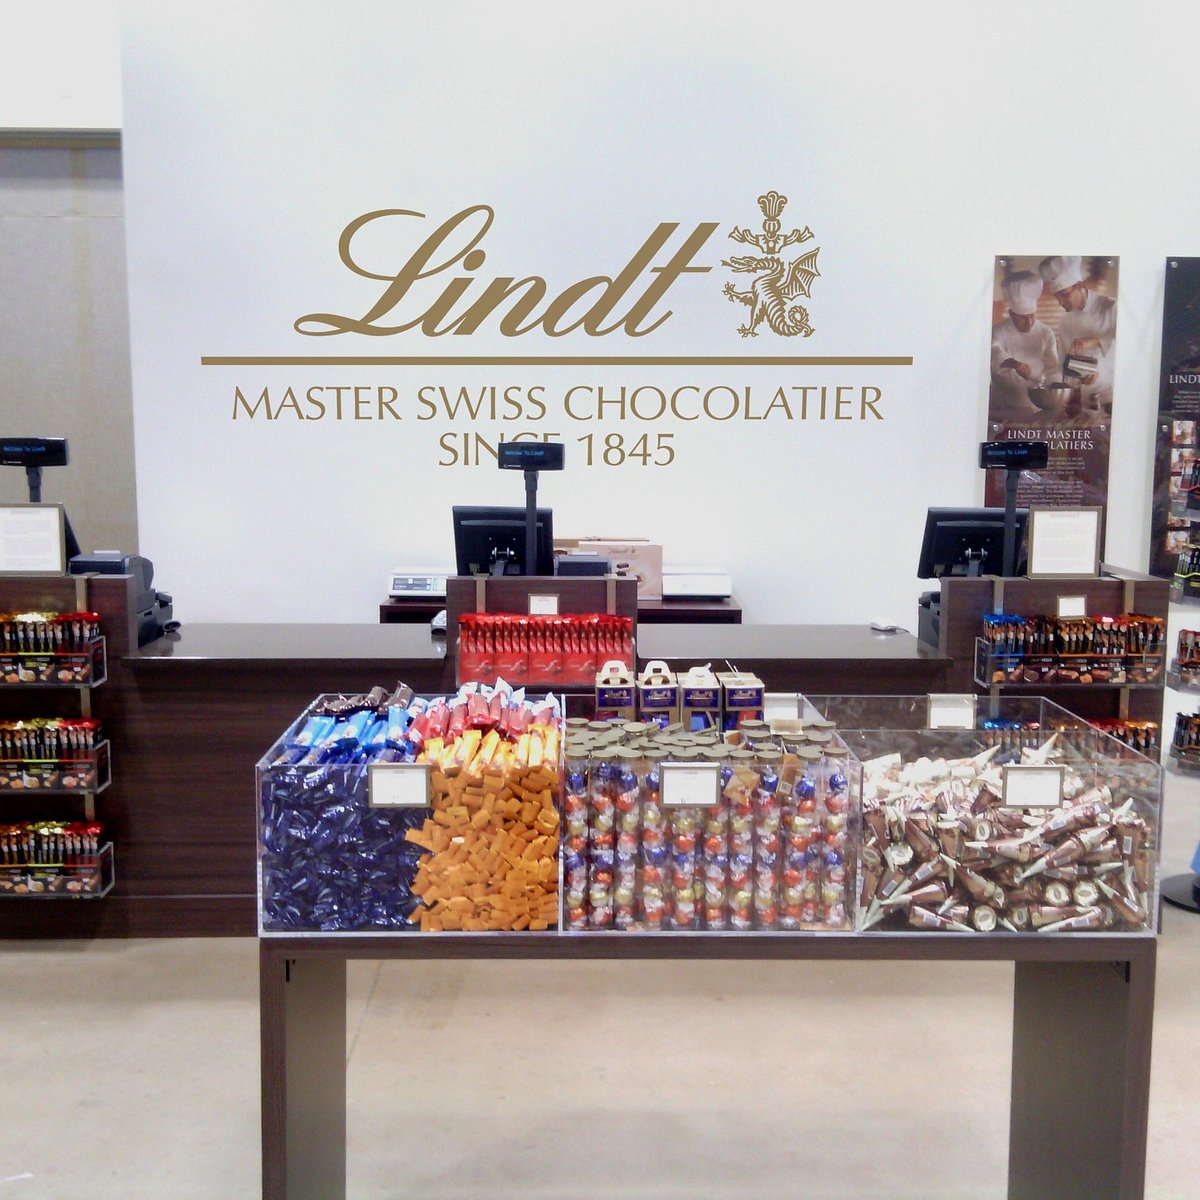 lindt chocolate factory tour uk